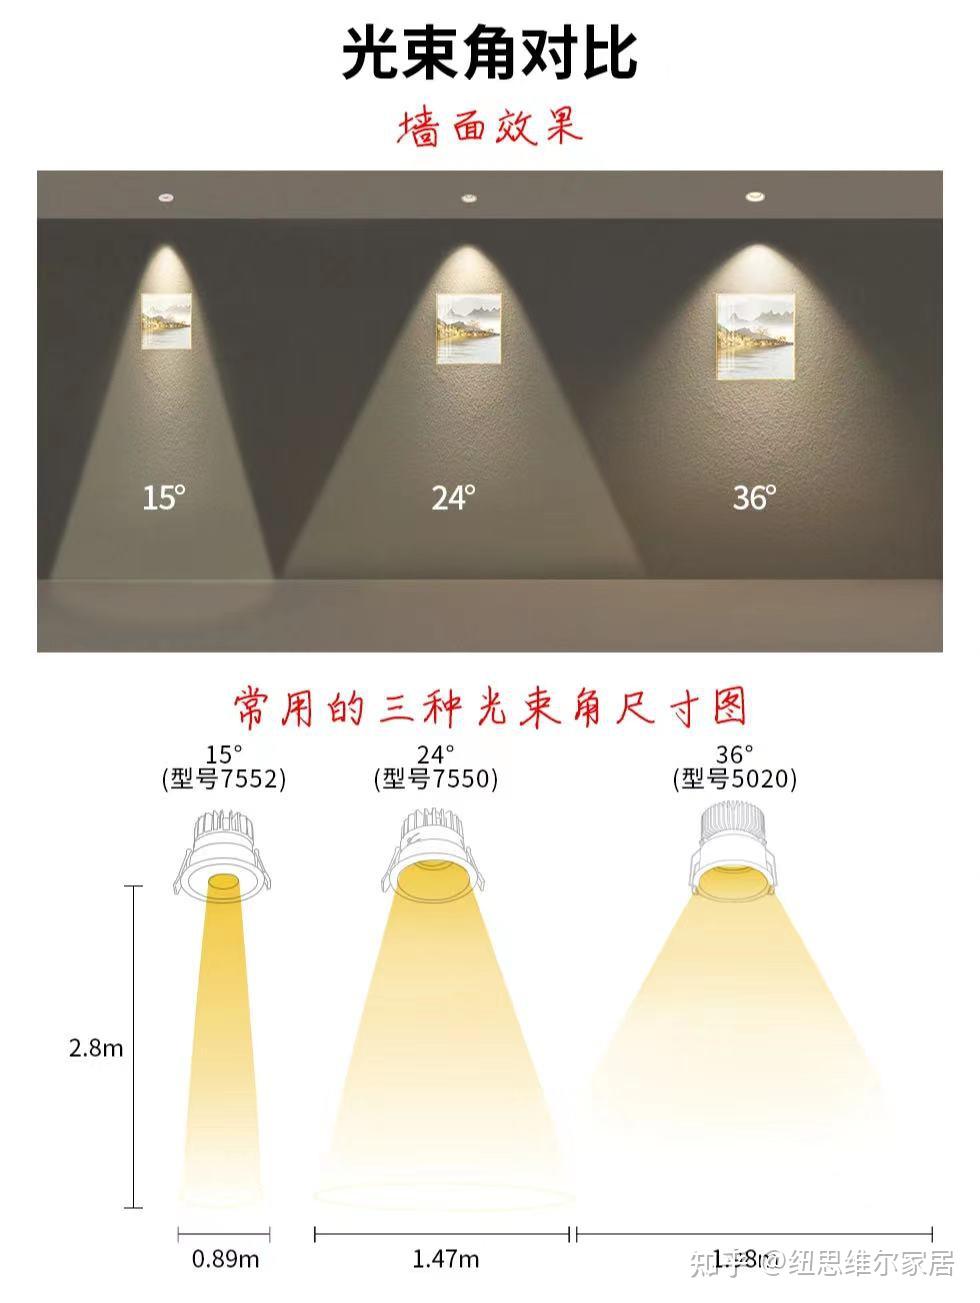 (不知道怎么选就买24°)36°适合照亮装饰画24°洗墙可达到最佳效果15